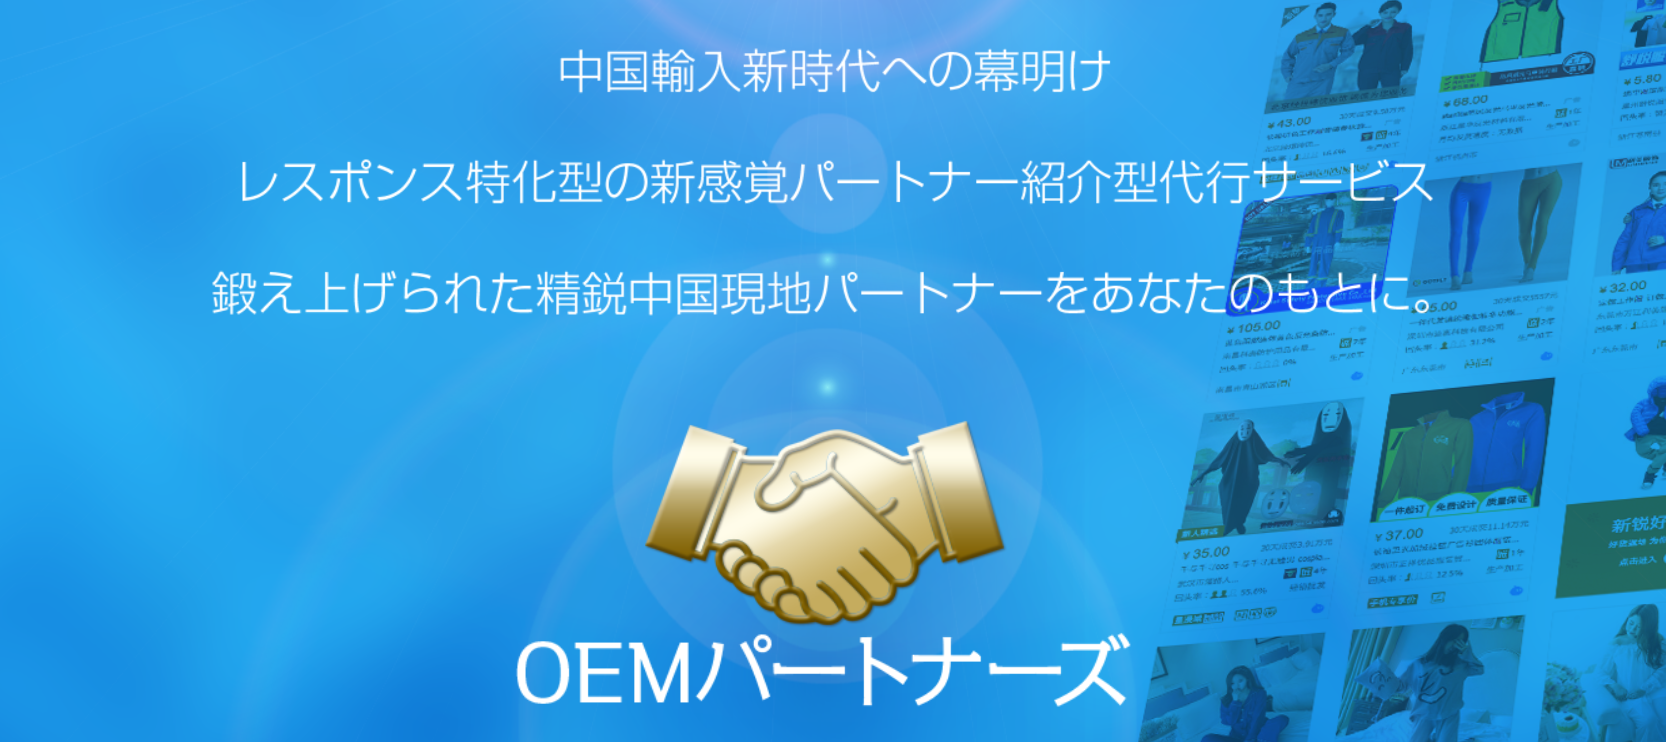 中国輸入代行会社「OEMパートナーズ」